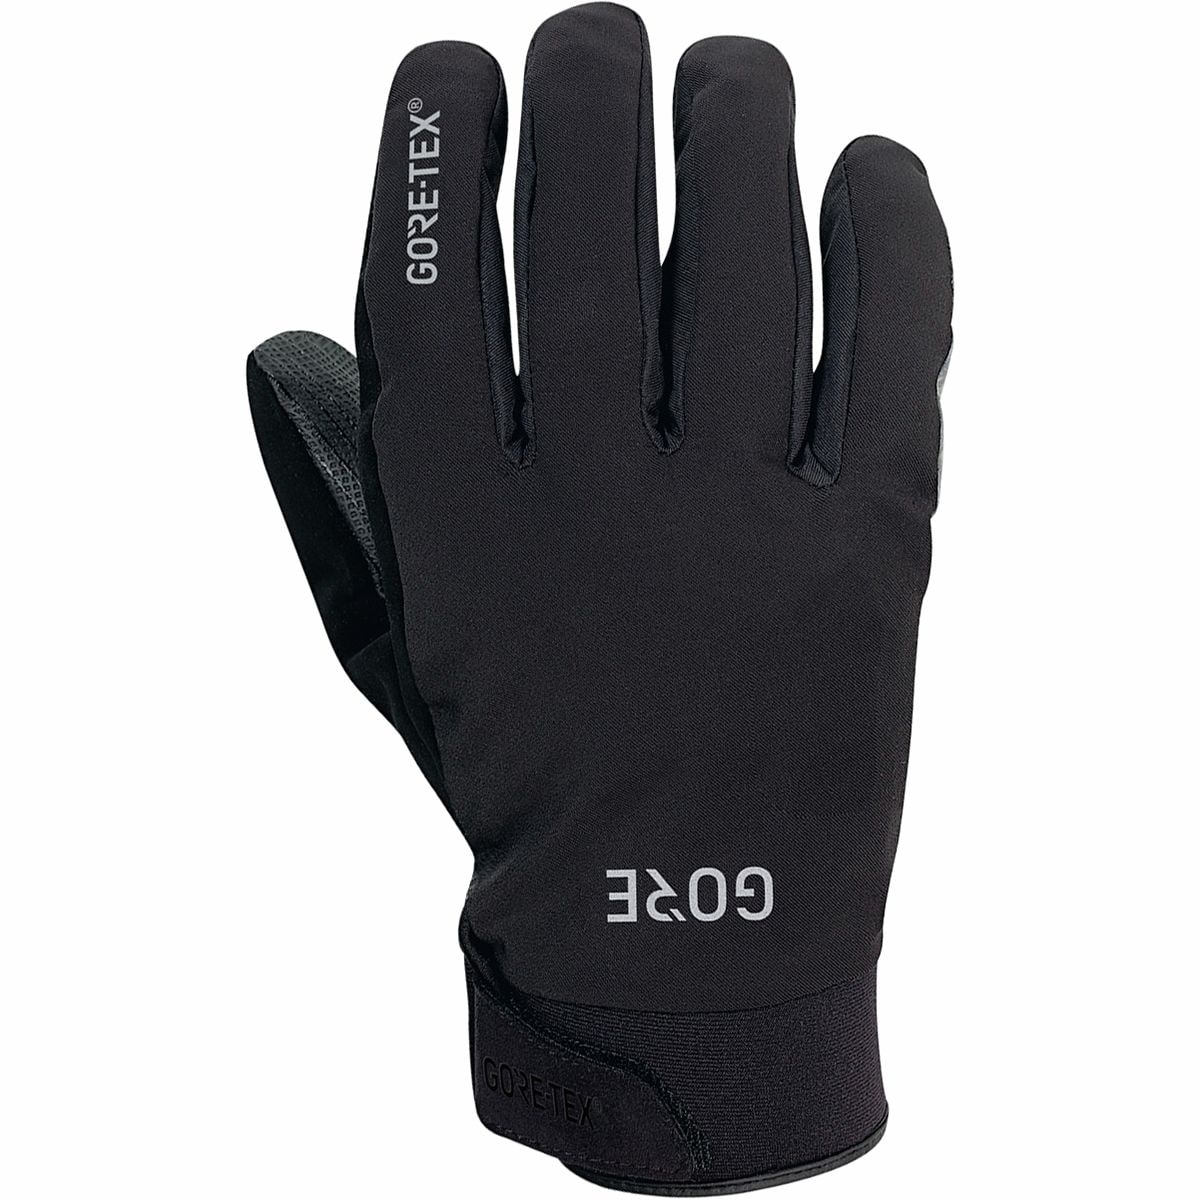 GOREWEAR C5 GORE-TEX Thermo Glove - Men's